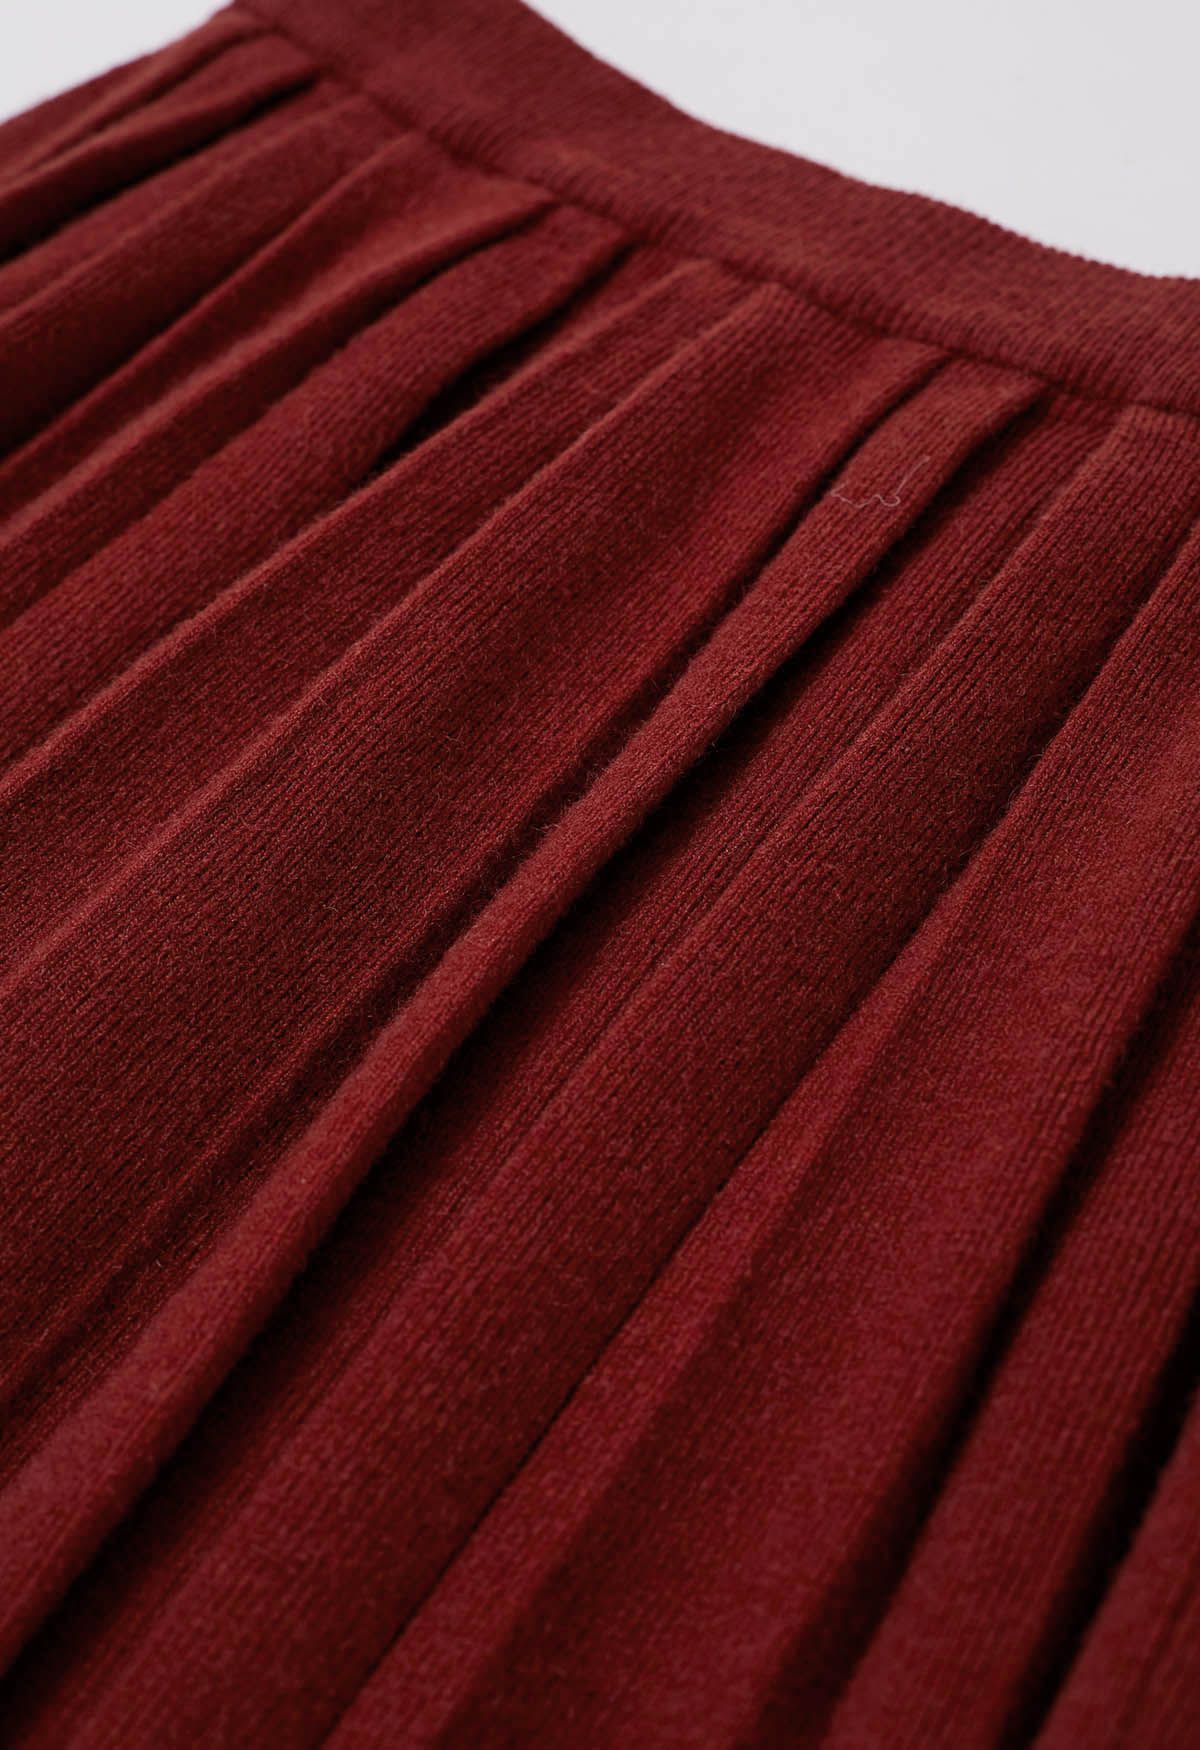 Mini-jupe plissée à taille élastique en rouge